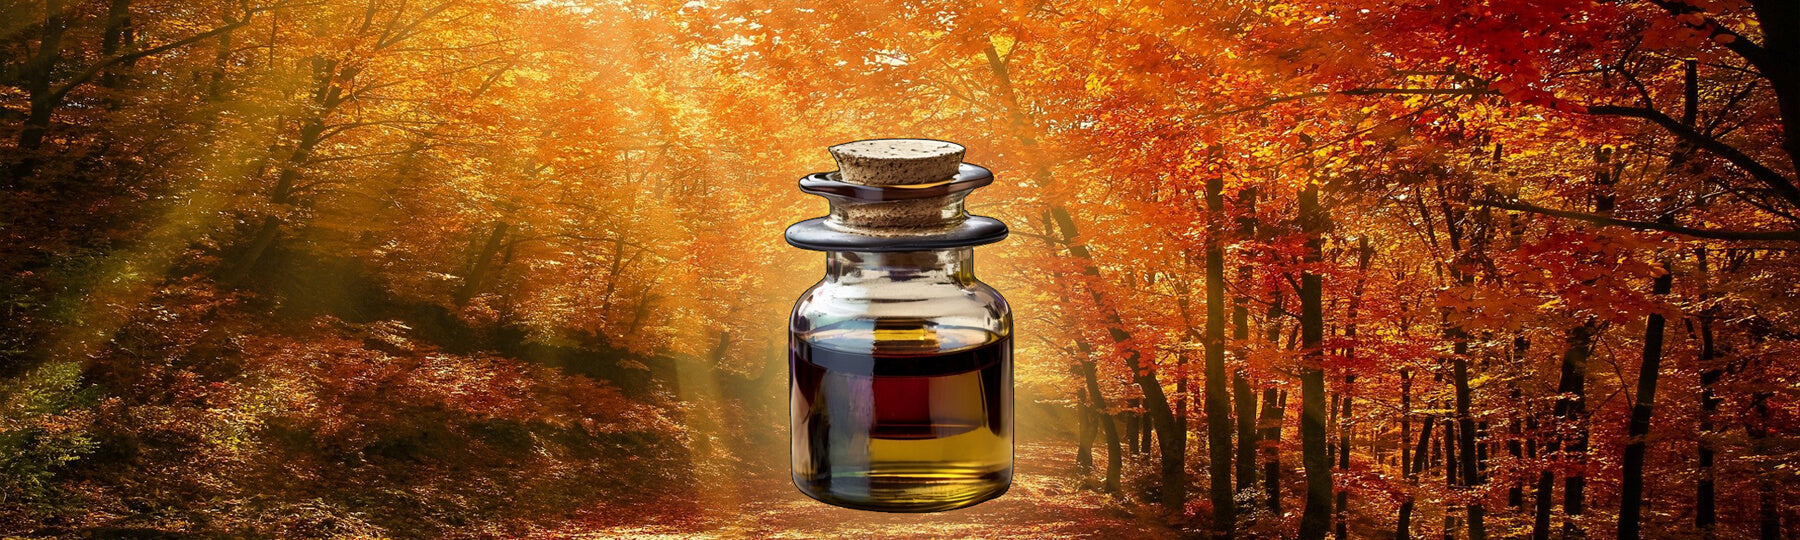 Naturreine Herbst-Düfte | Natürliche Herbstdüfte